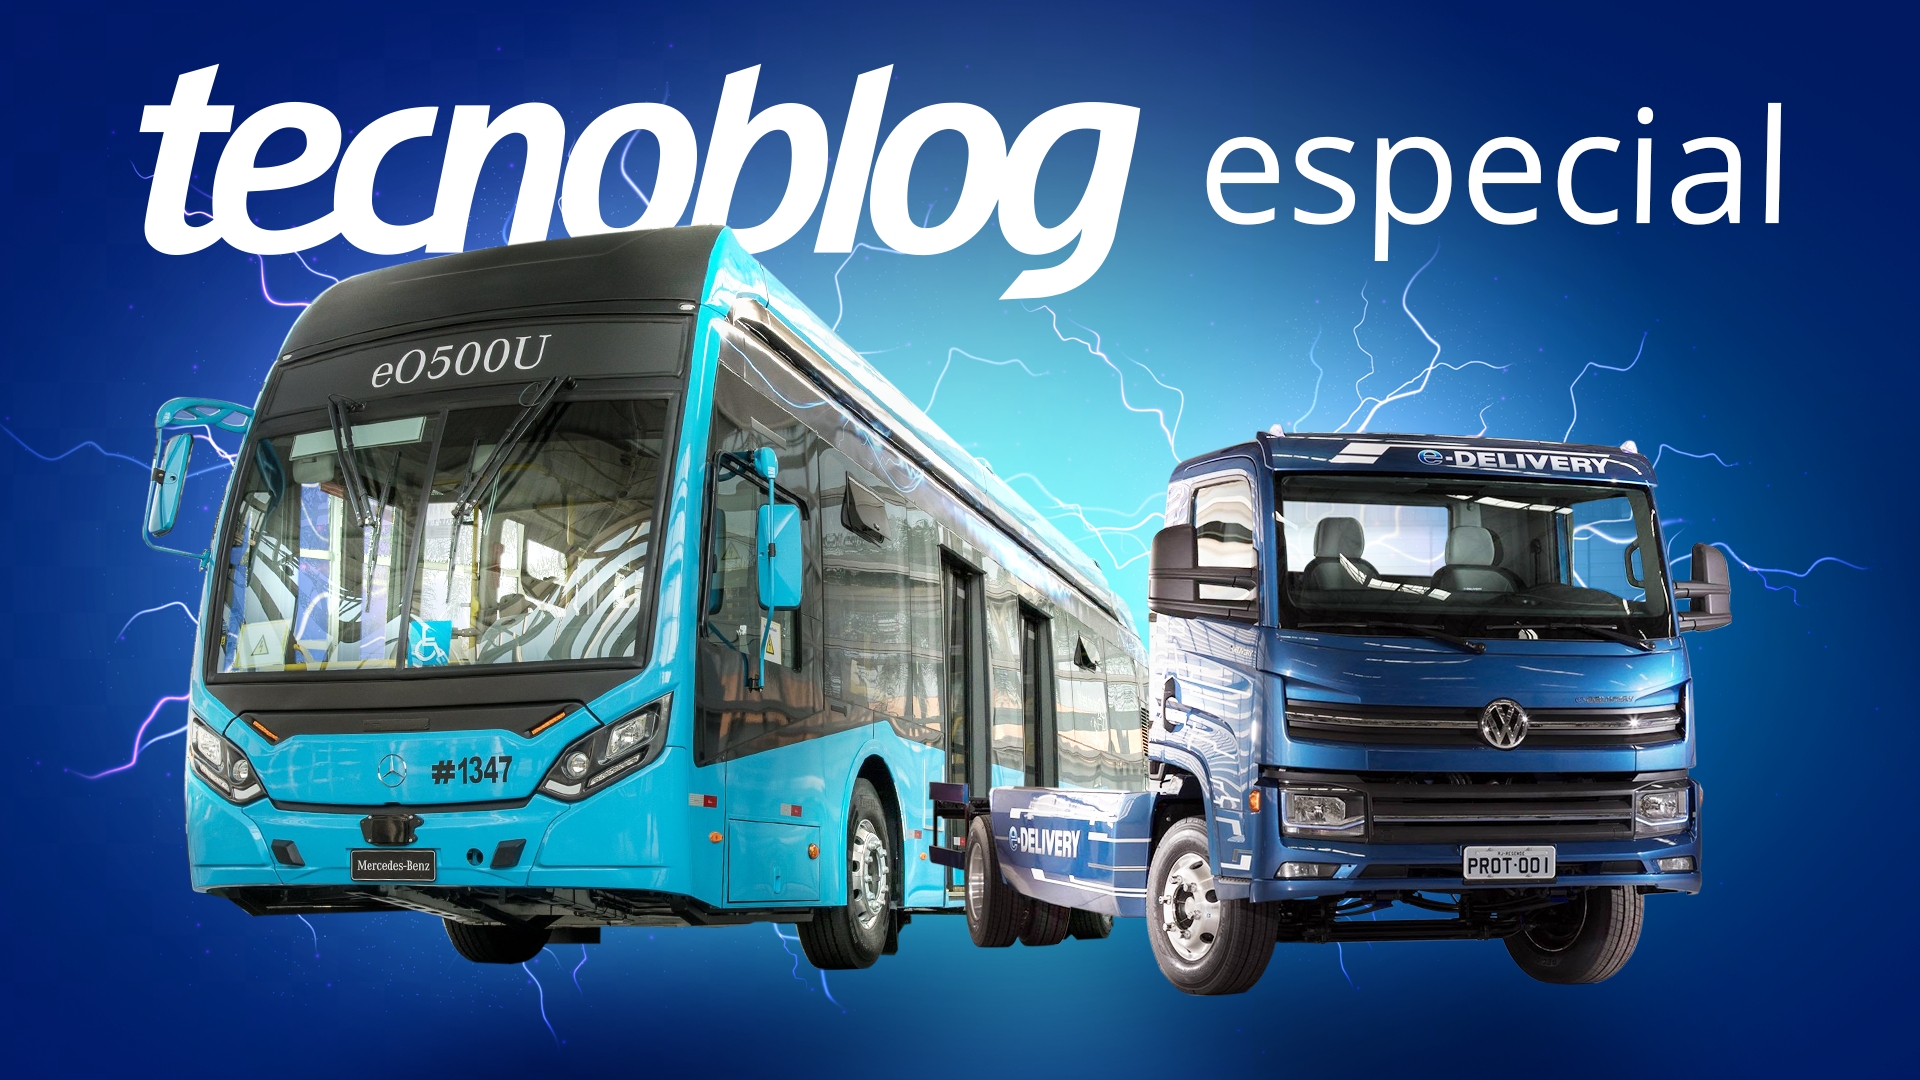 Os 5 Melhores Jogos de Ônibus Rodoviários Brasileiros para Celular